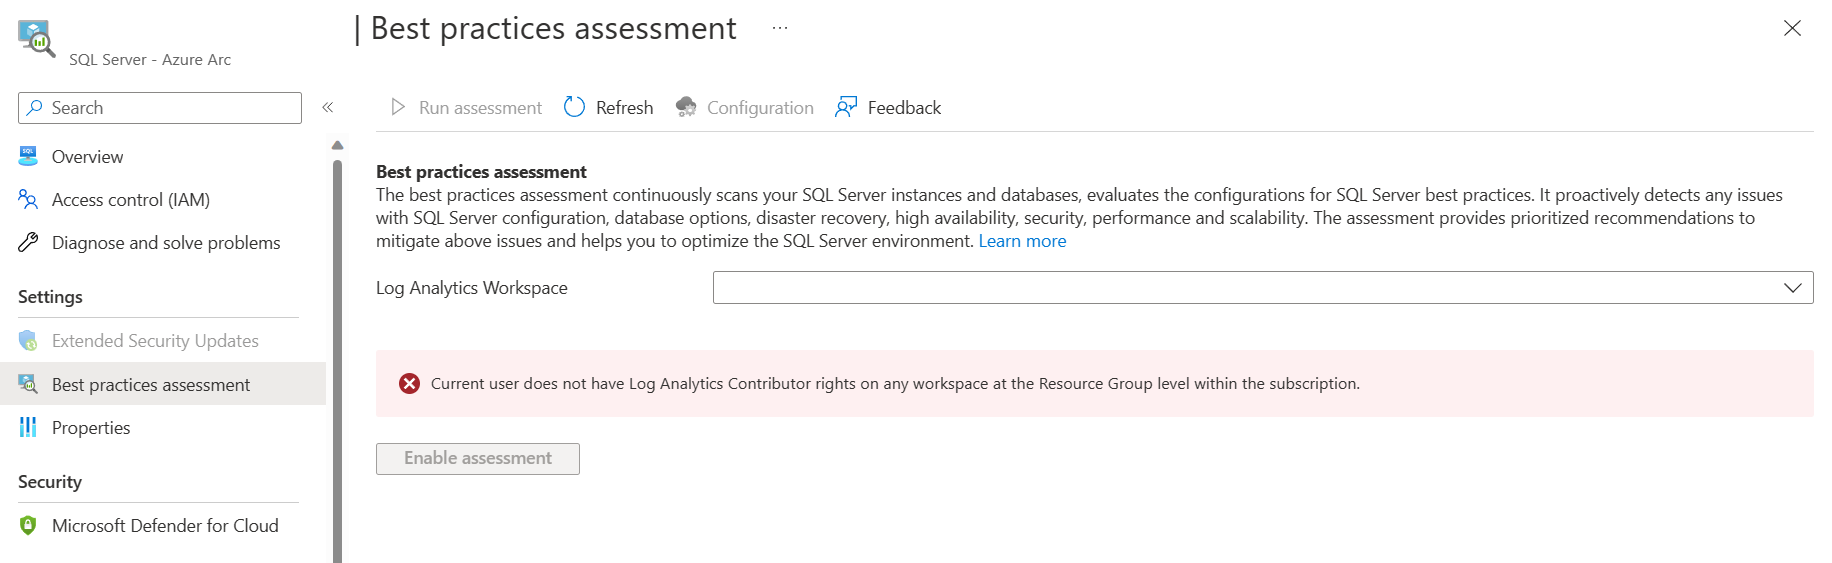 Captura de tela mostrando a mensagem de erro quando nenhum valor está visível na lista suspensa do seletor de workspace do Log Analytics.